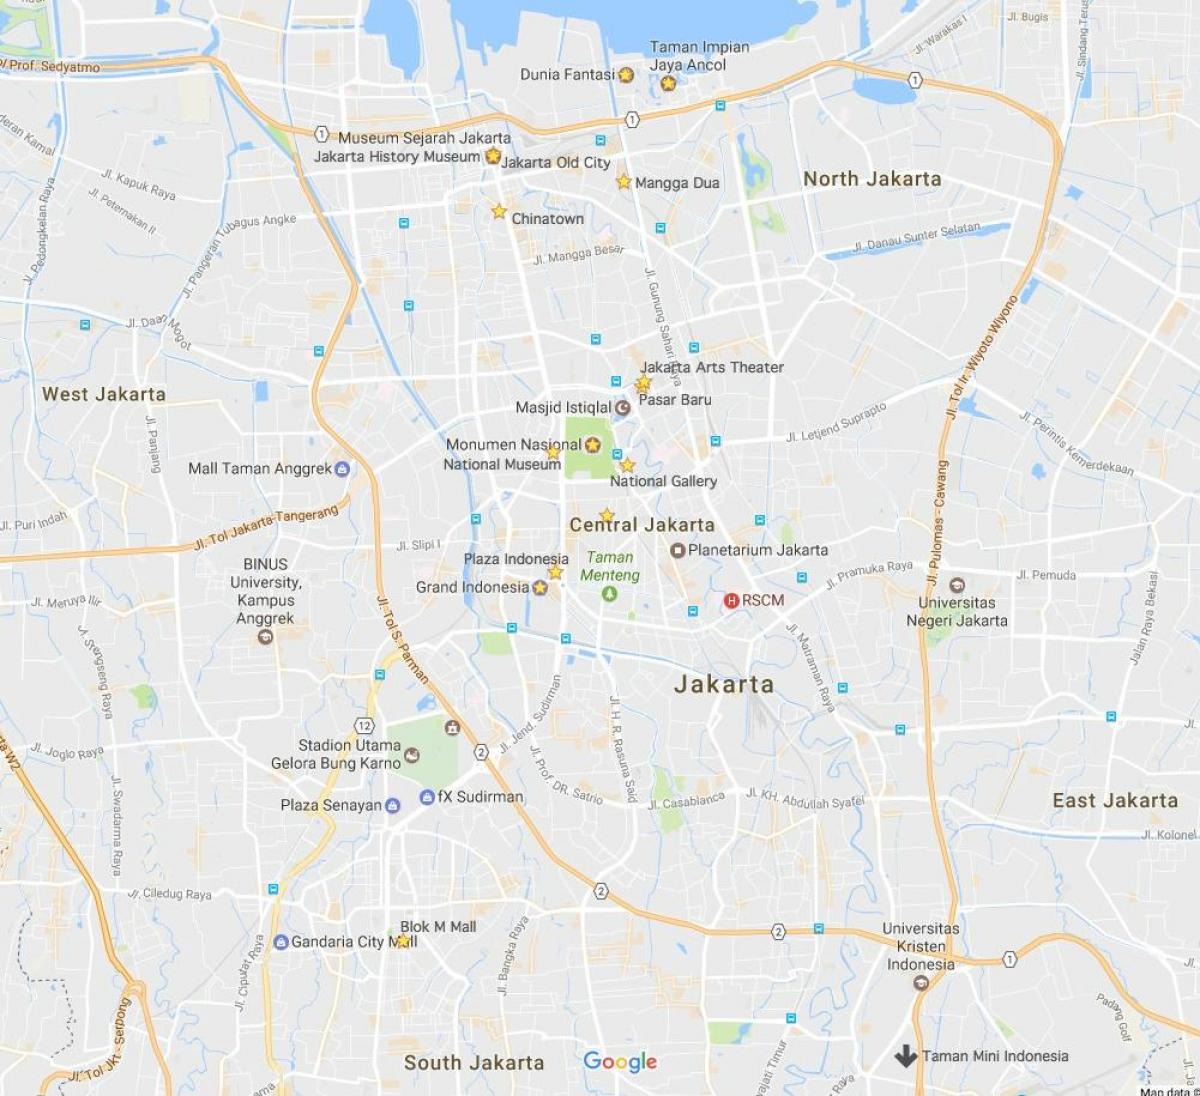 χάρτης της Τζακάρτα νυχτερινή ζωή